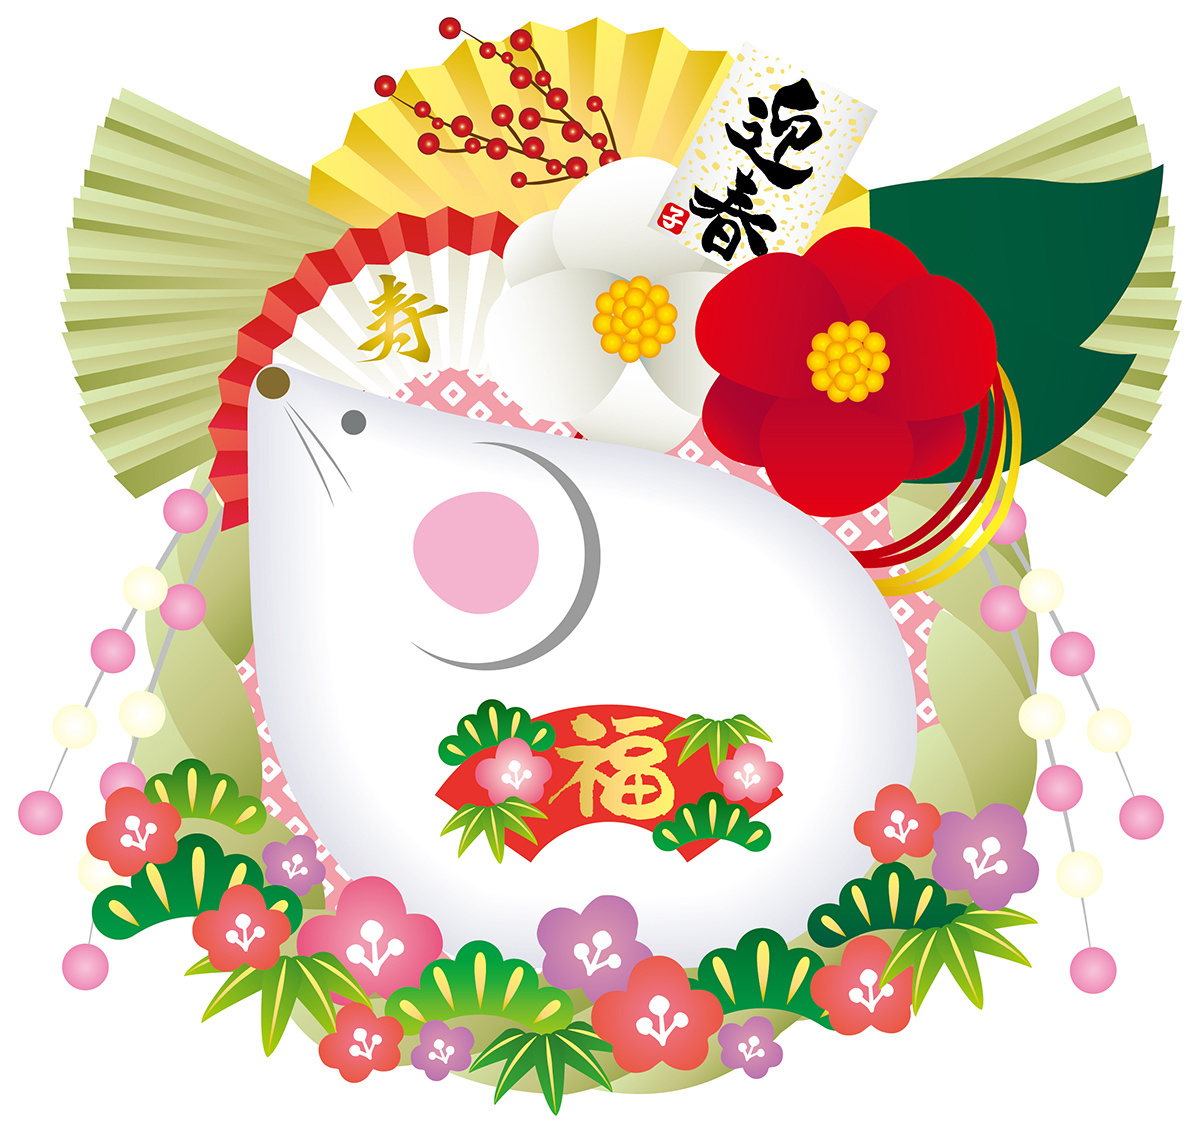 《1月11日〜13日》のきさき市やちゃんこ鍋ふるまいを楽しもう♪近江八幡市の”きてか～な”で「迎春新年祭」が開催！